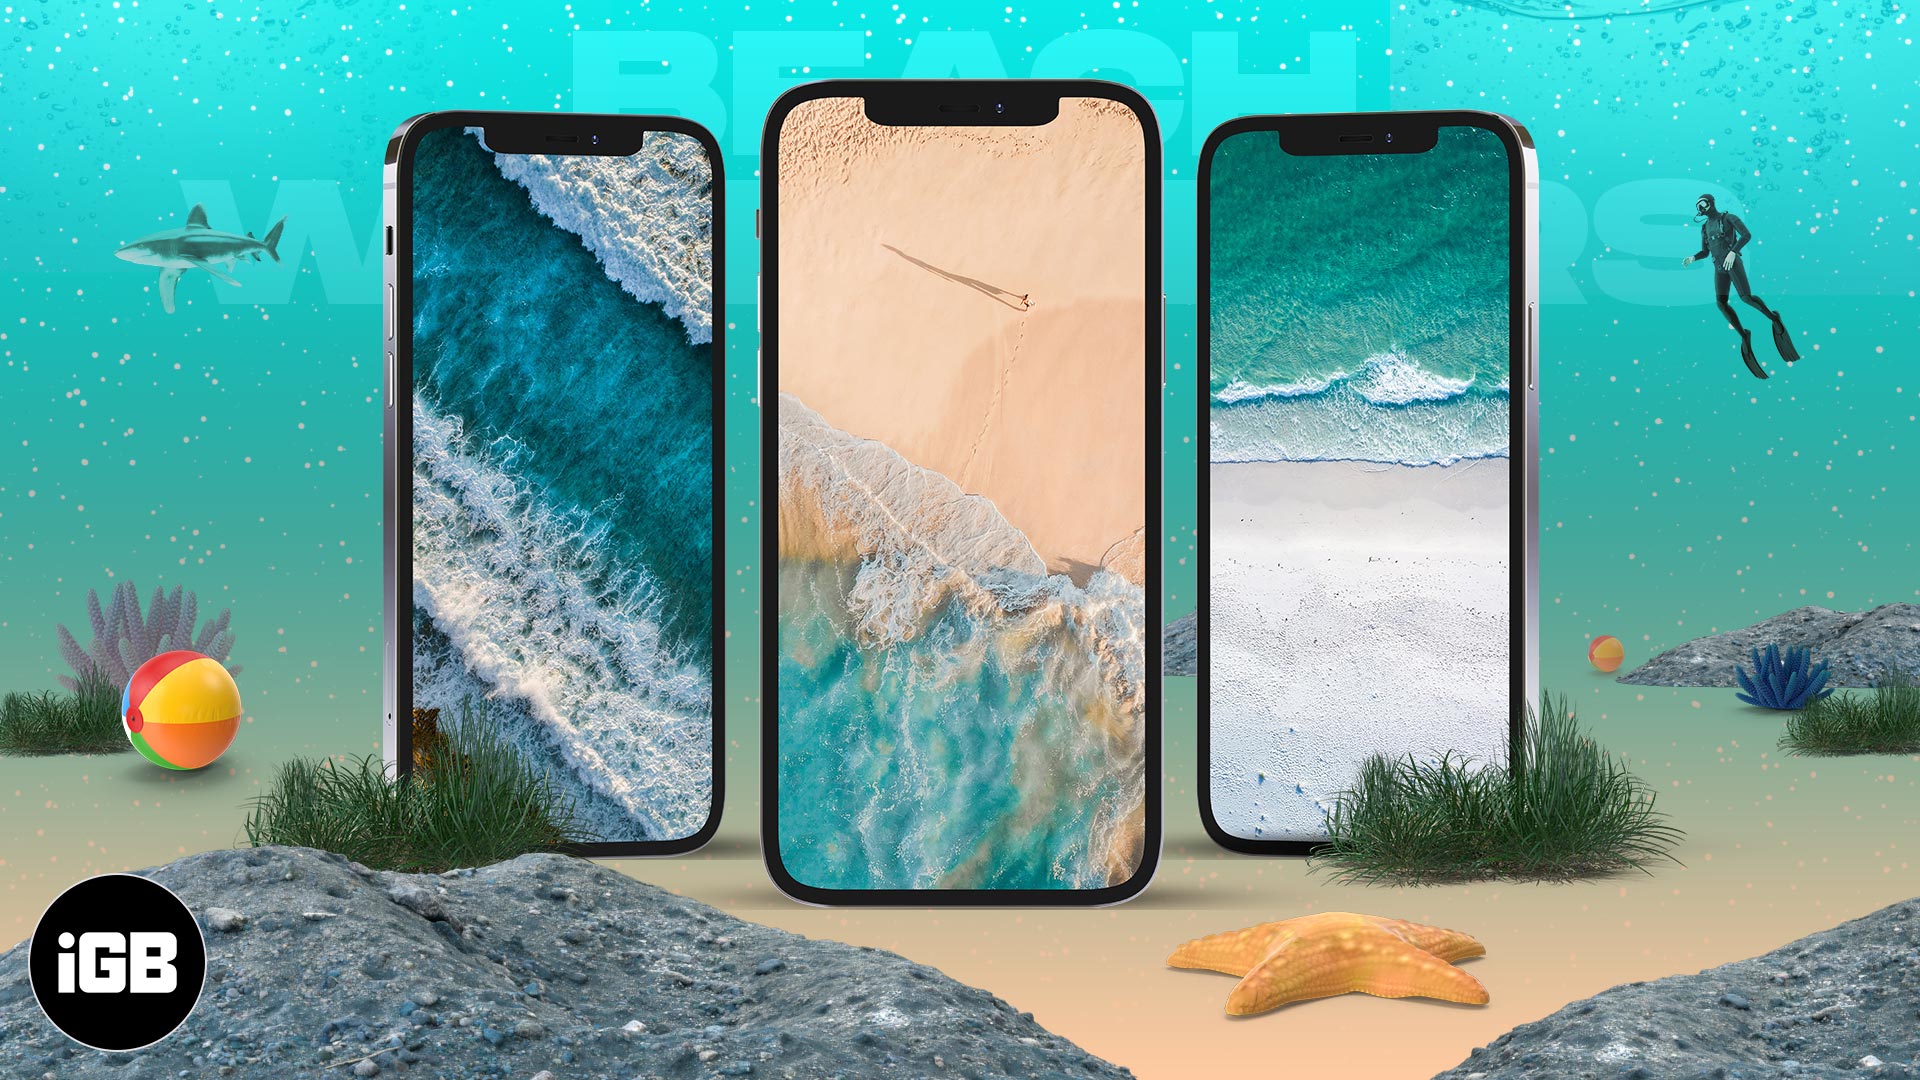 15 Best Beach Iphone Wallpapers In 21 Free Hd Download Igeeksblog